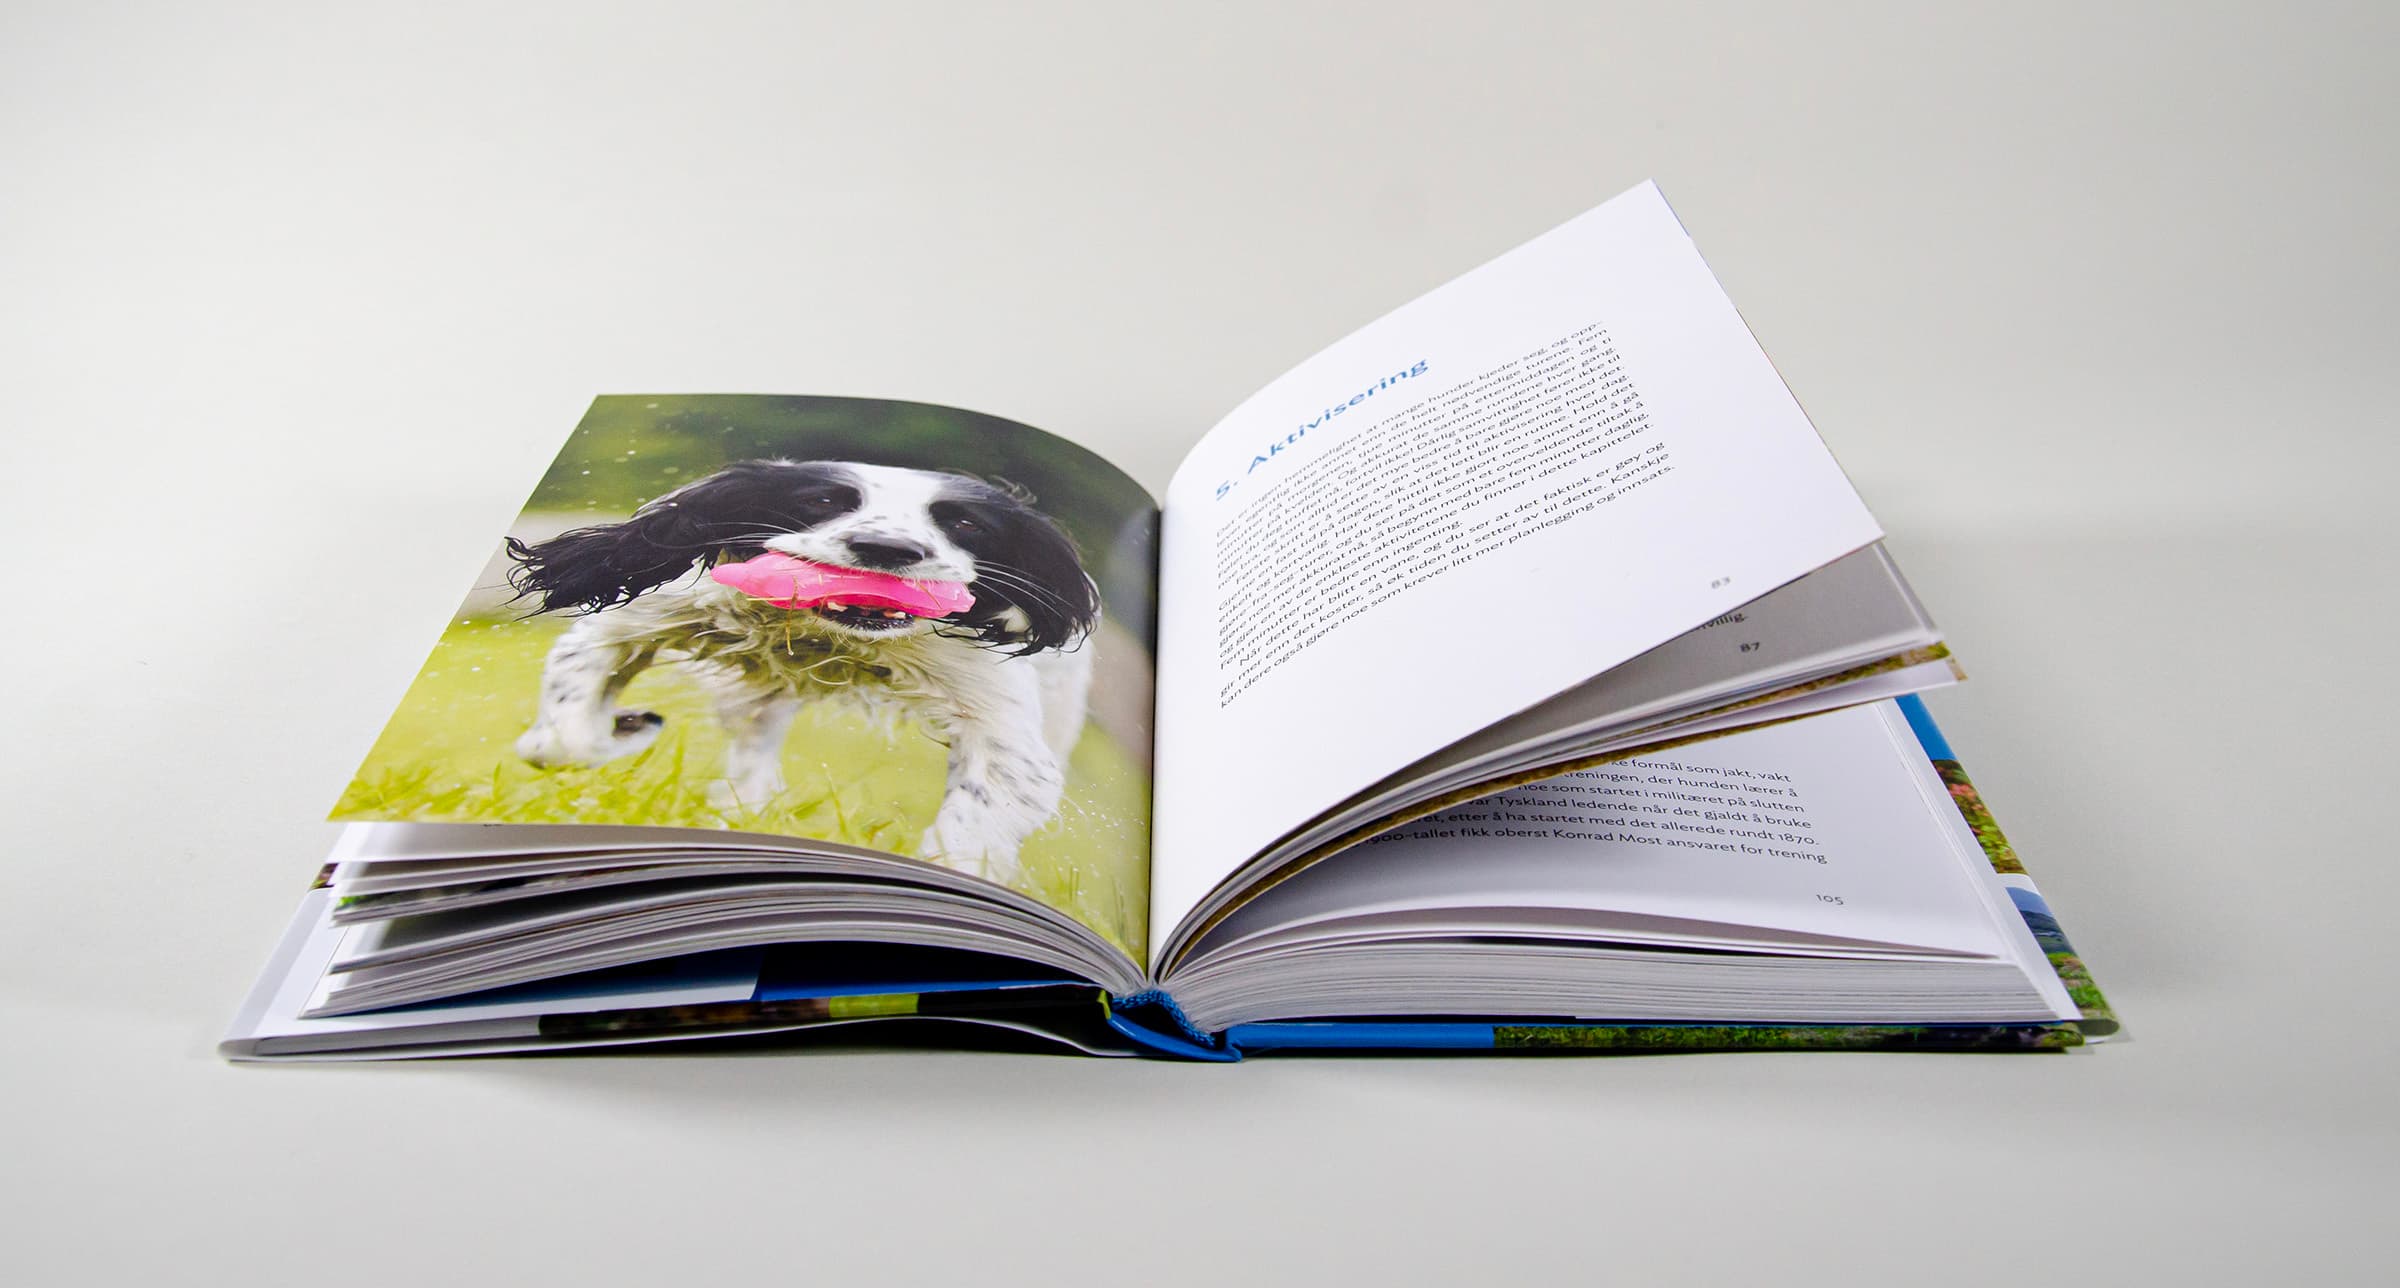 Bildet viser et oppslag med et helsidebilde av en hund med en leke i munnen, og tekst på motsatt side.